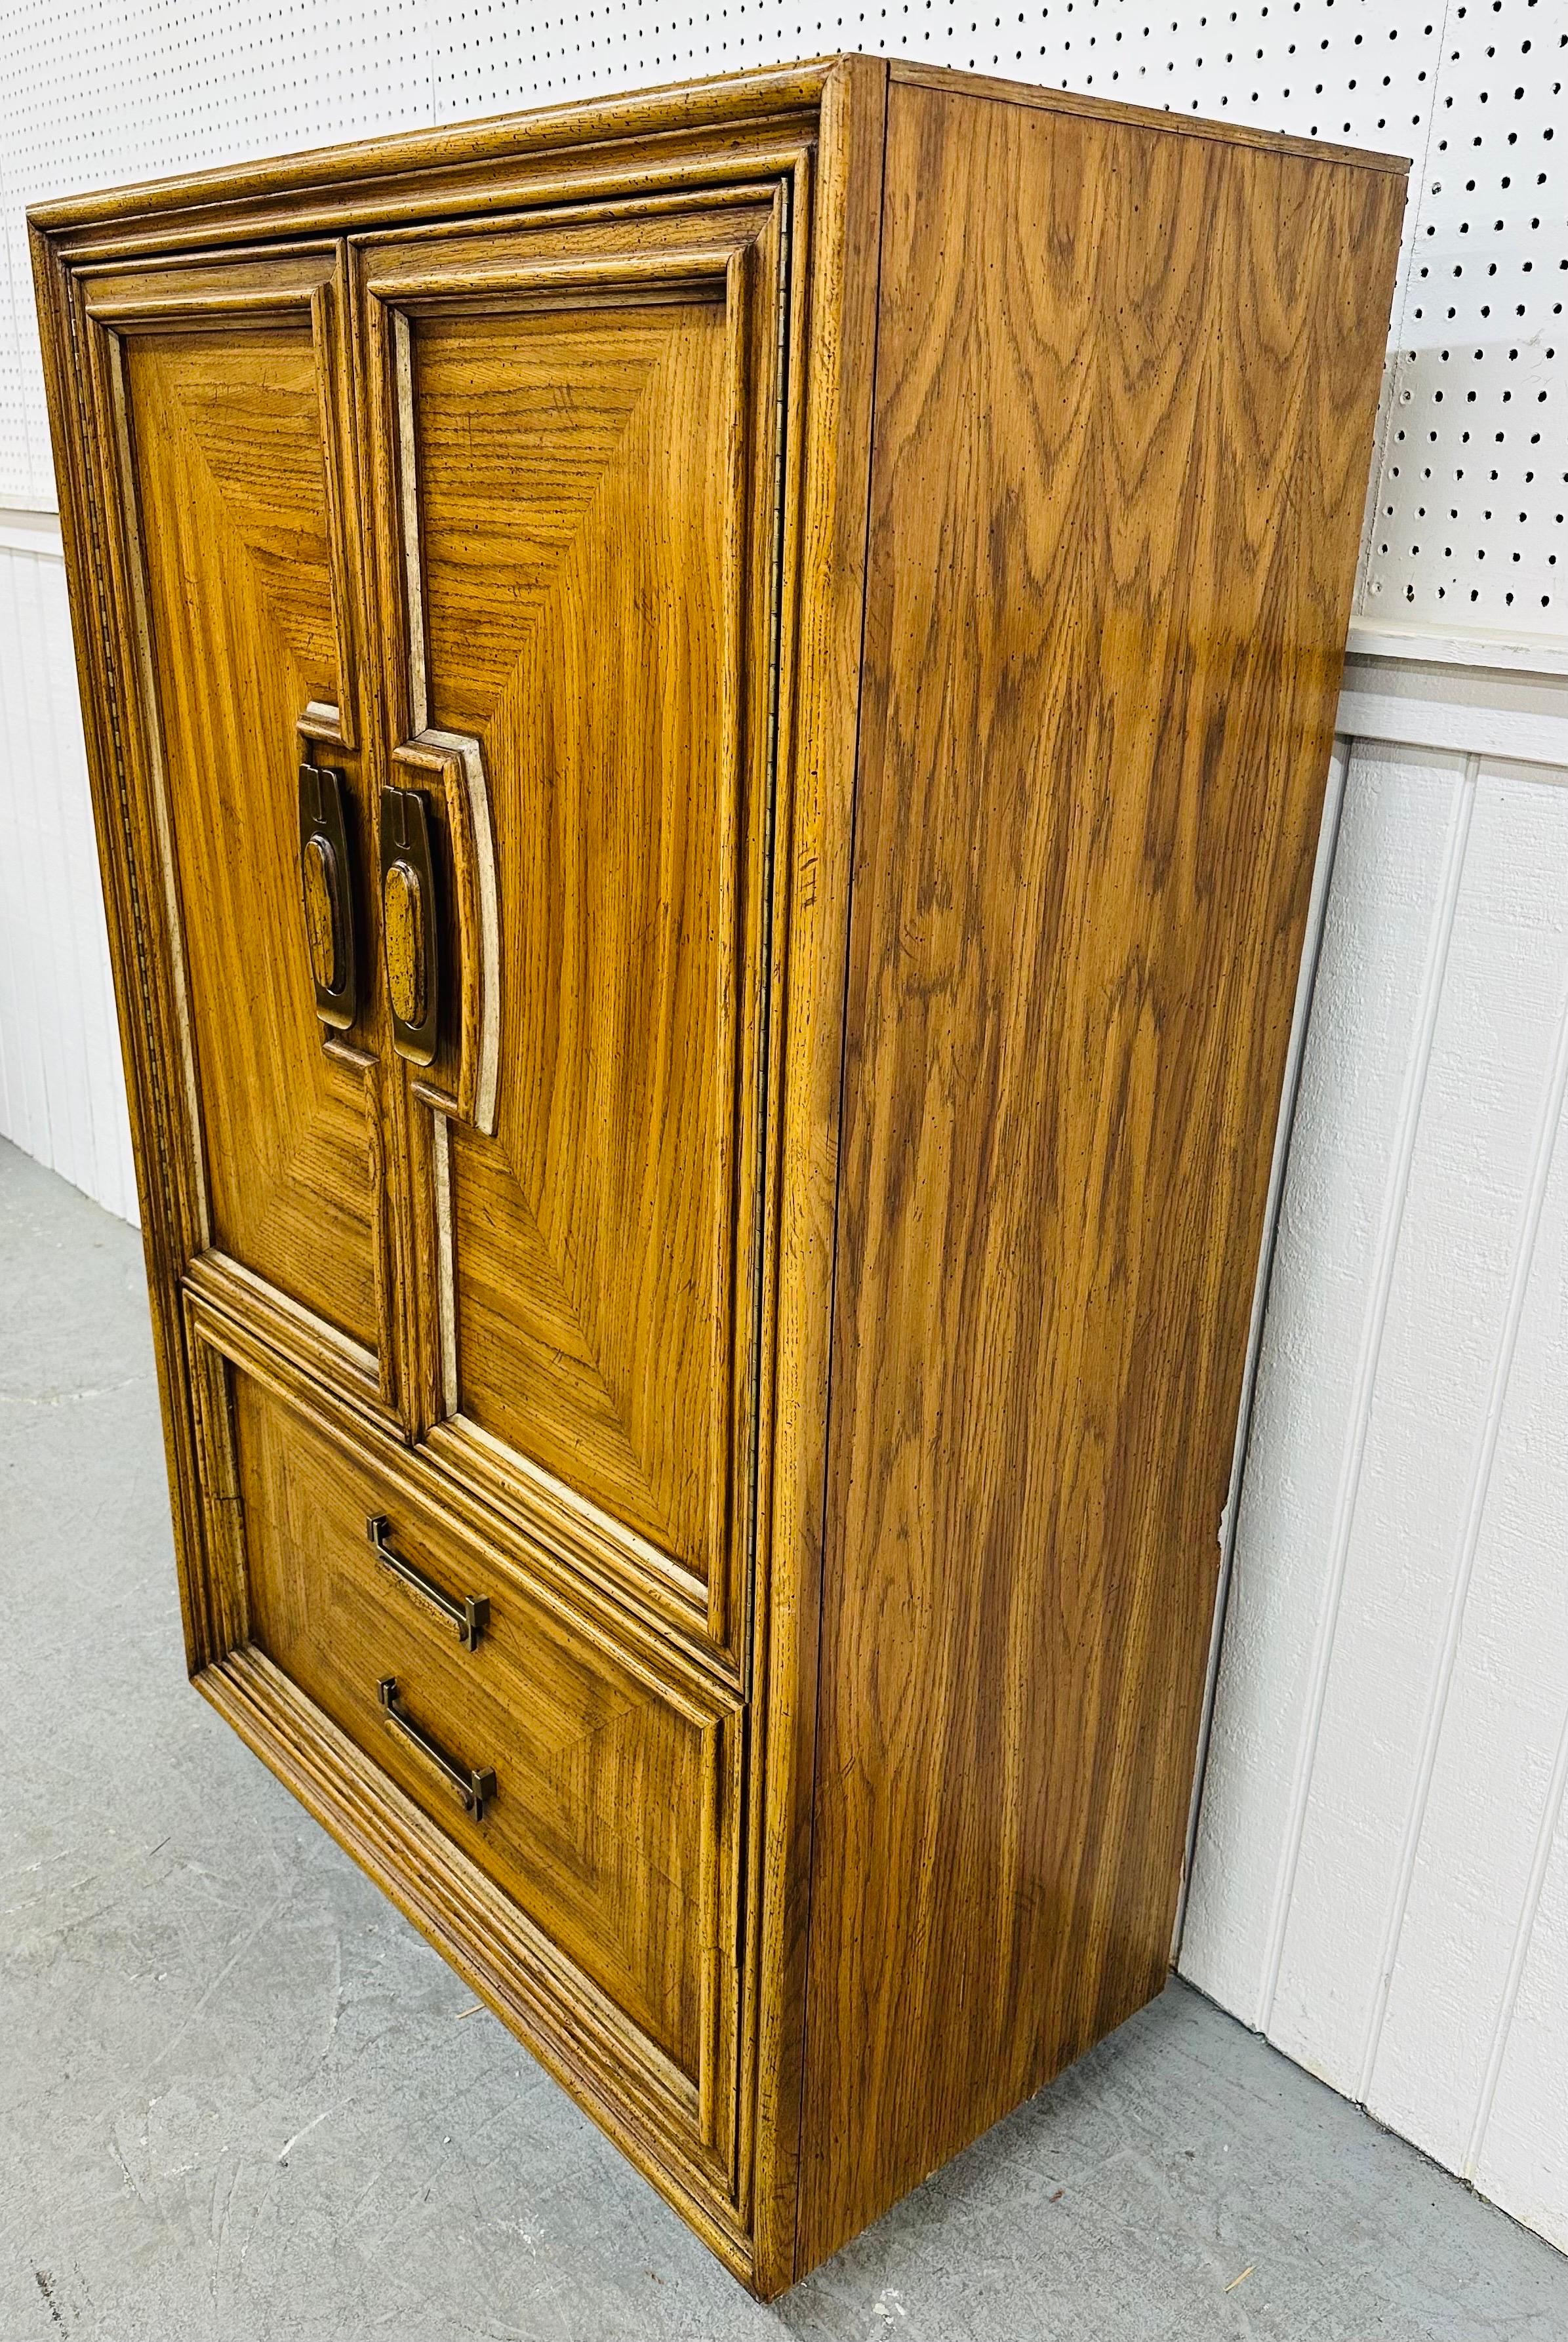 Diese Auflistung ist für ein Vintage Modern Oak Armoire. Mit einem geradlinigen Design, zwei großen Türen, die sich zu versteckten Schubladen mit Stauraum öffnen lassen, zwei größeren Schubladen am Boden, originalen Beschlägen und einer schönen